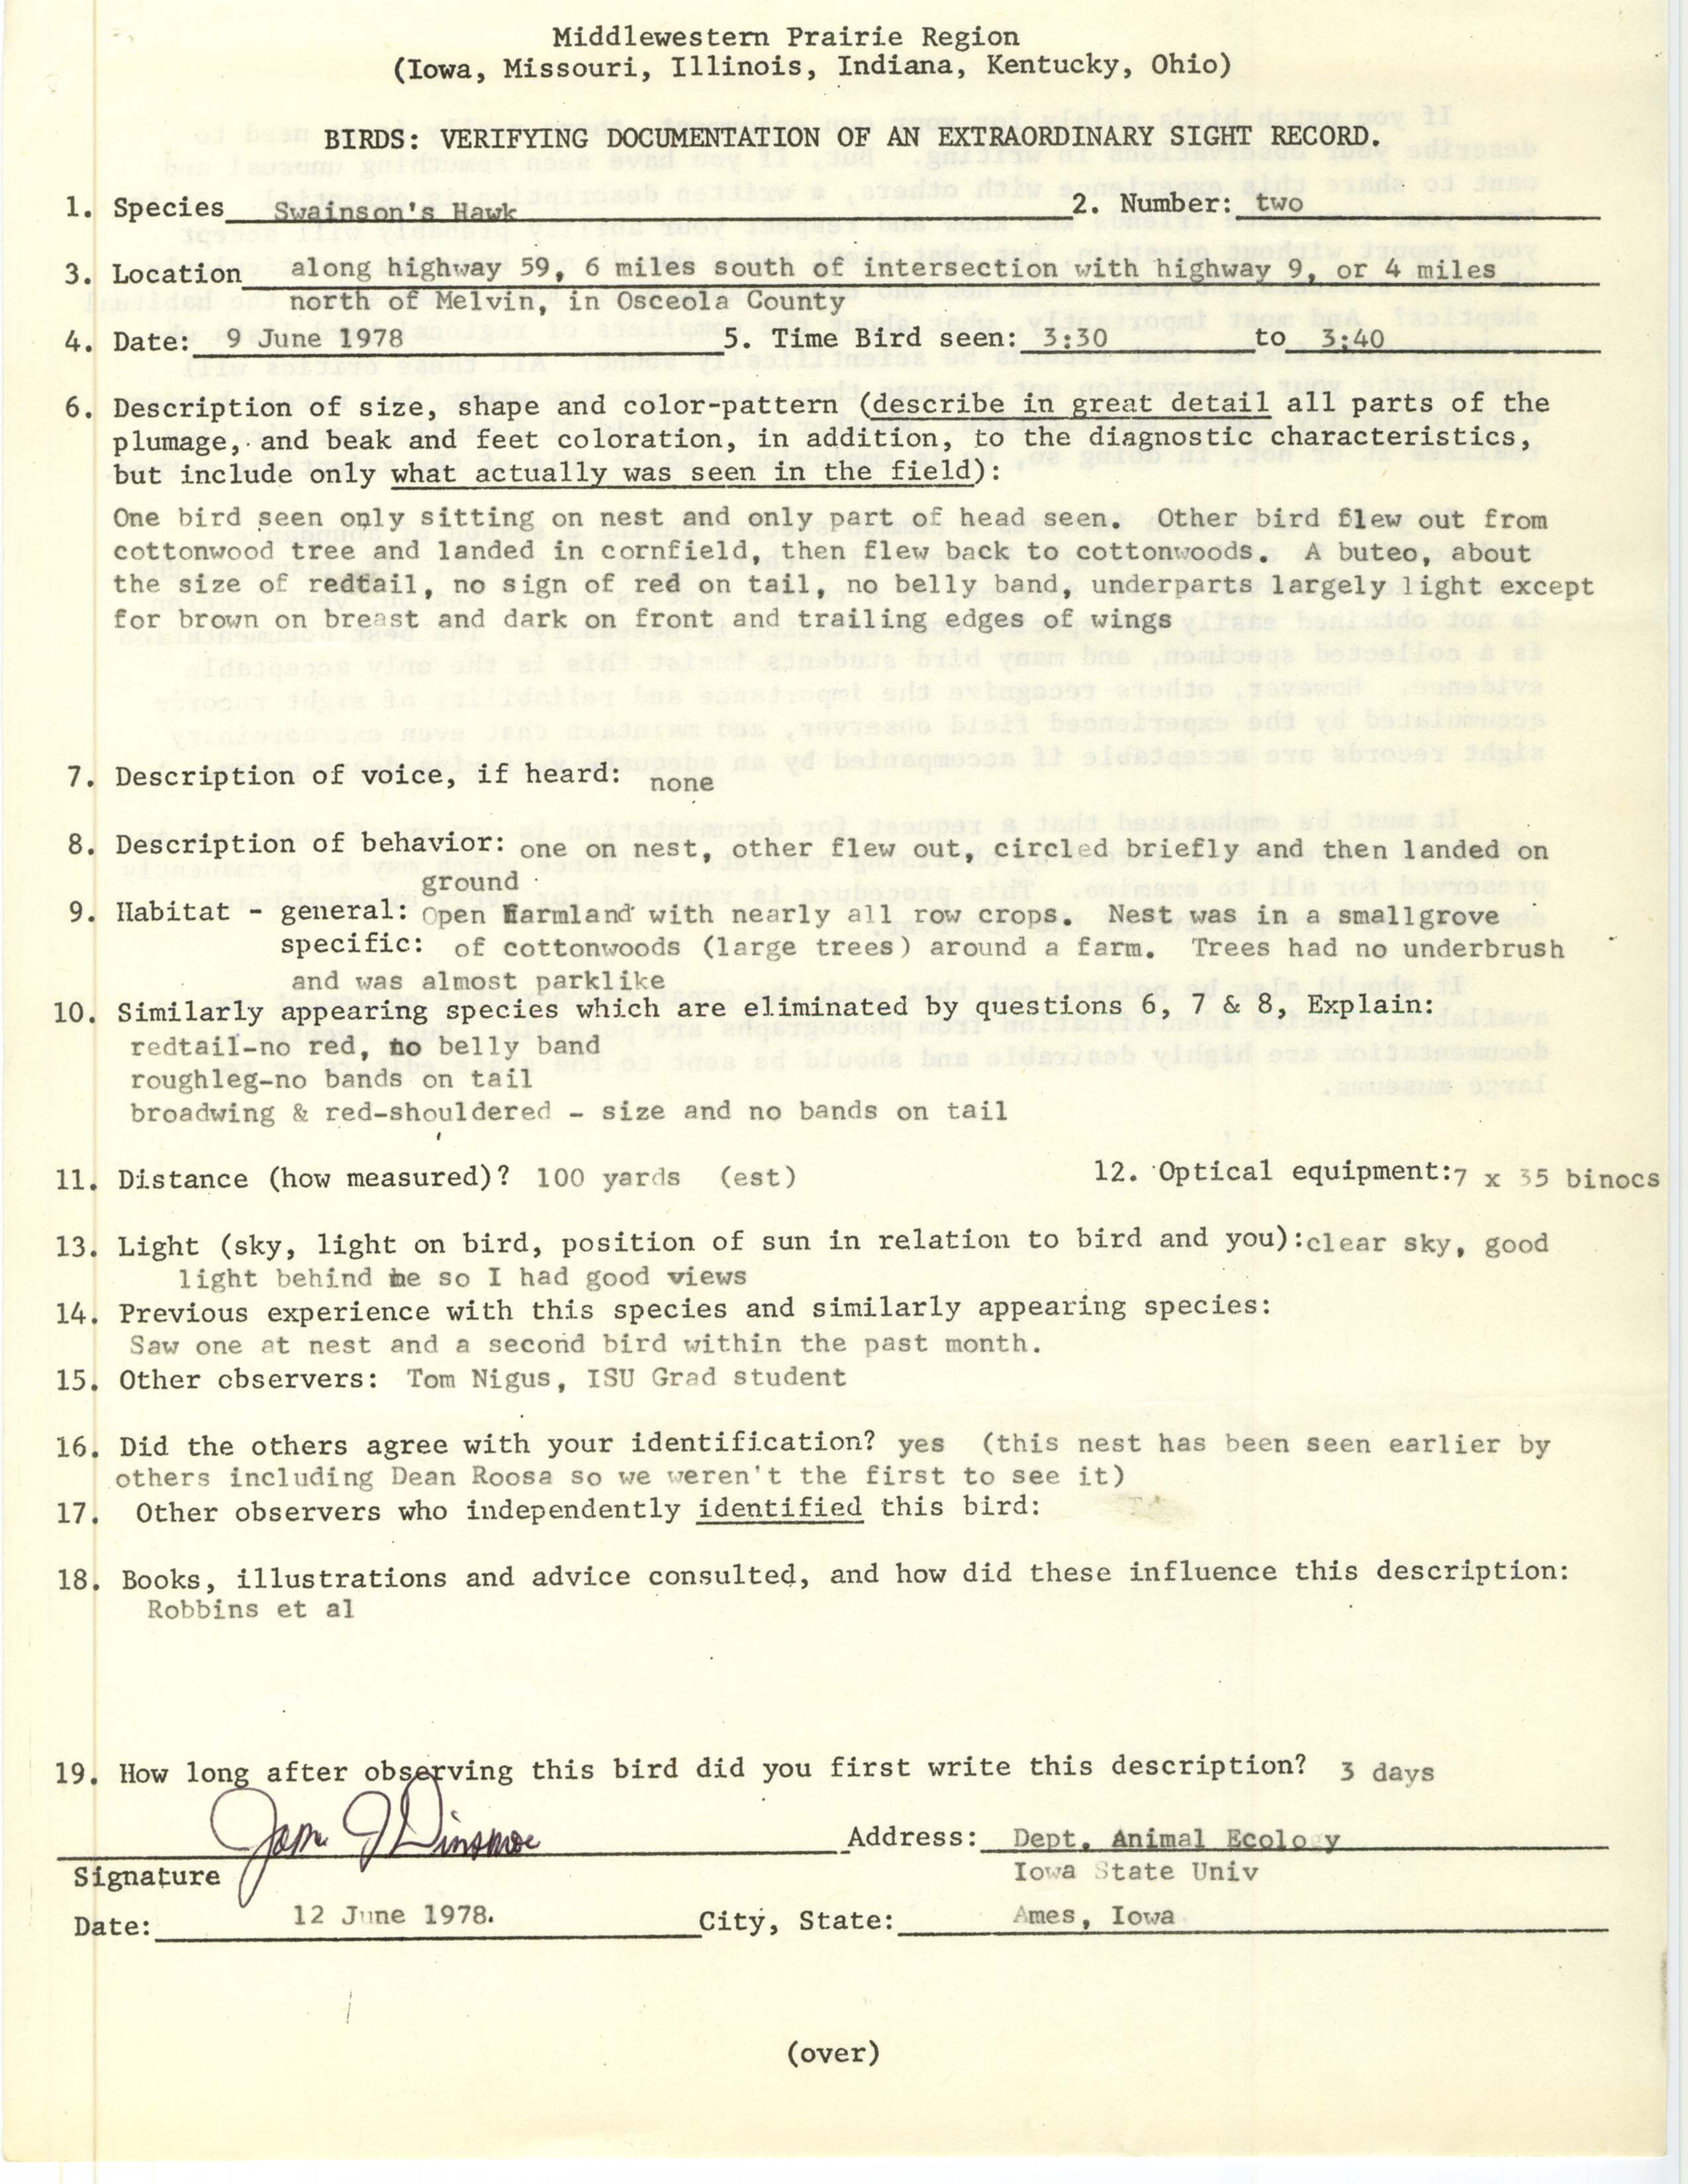 Rare bird documentation form for Swainson's Hawk near Melvin, 1978